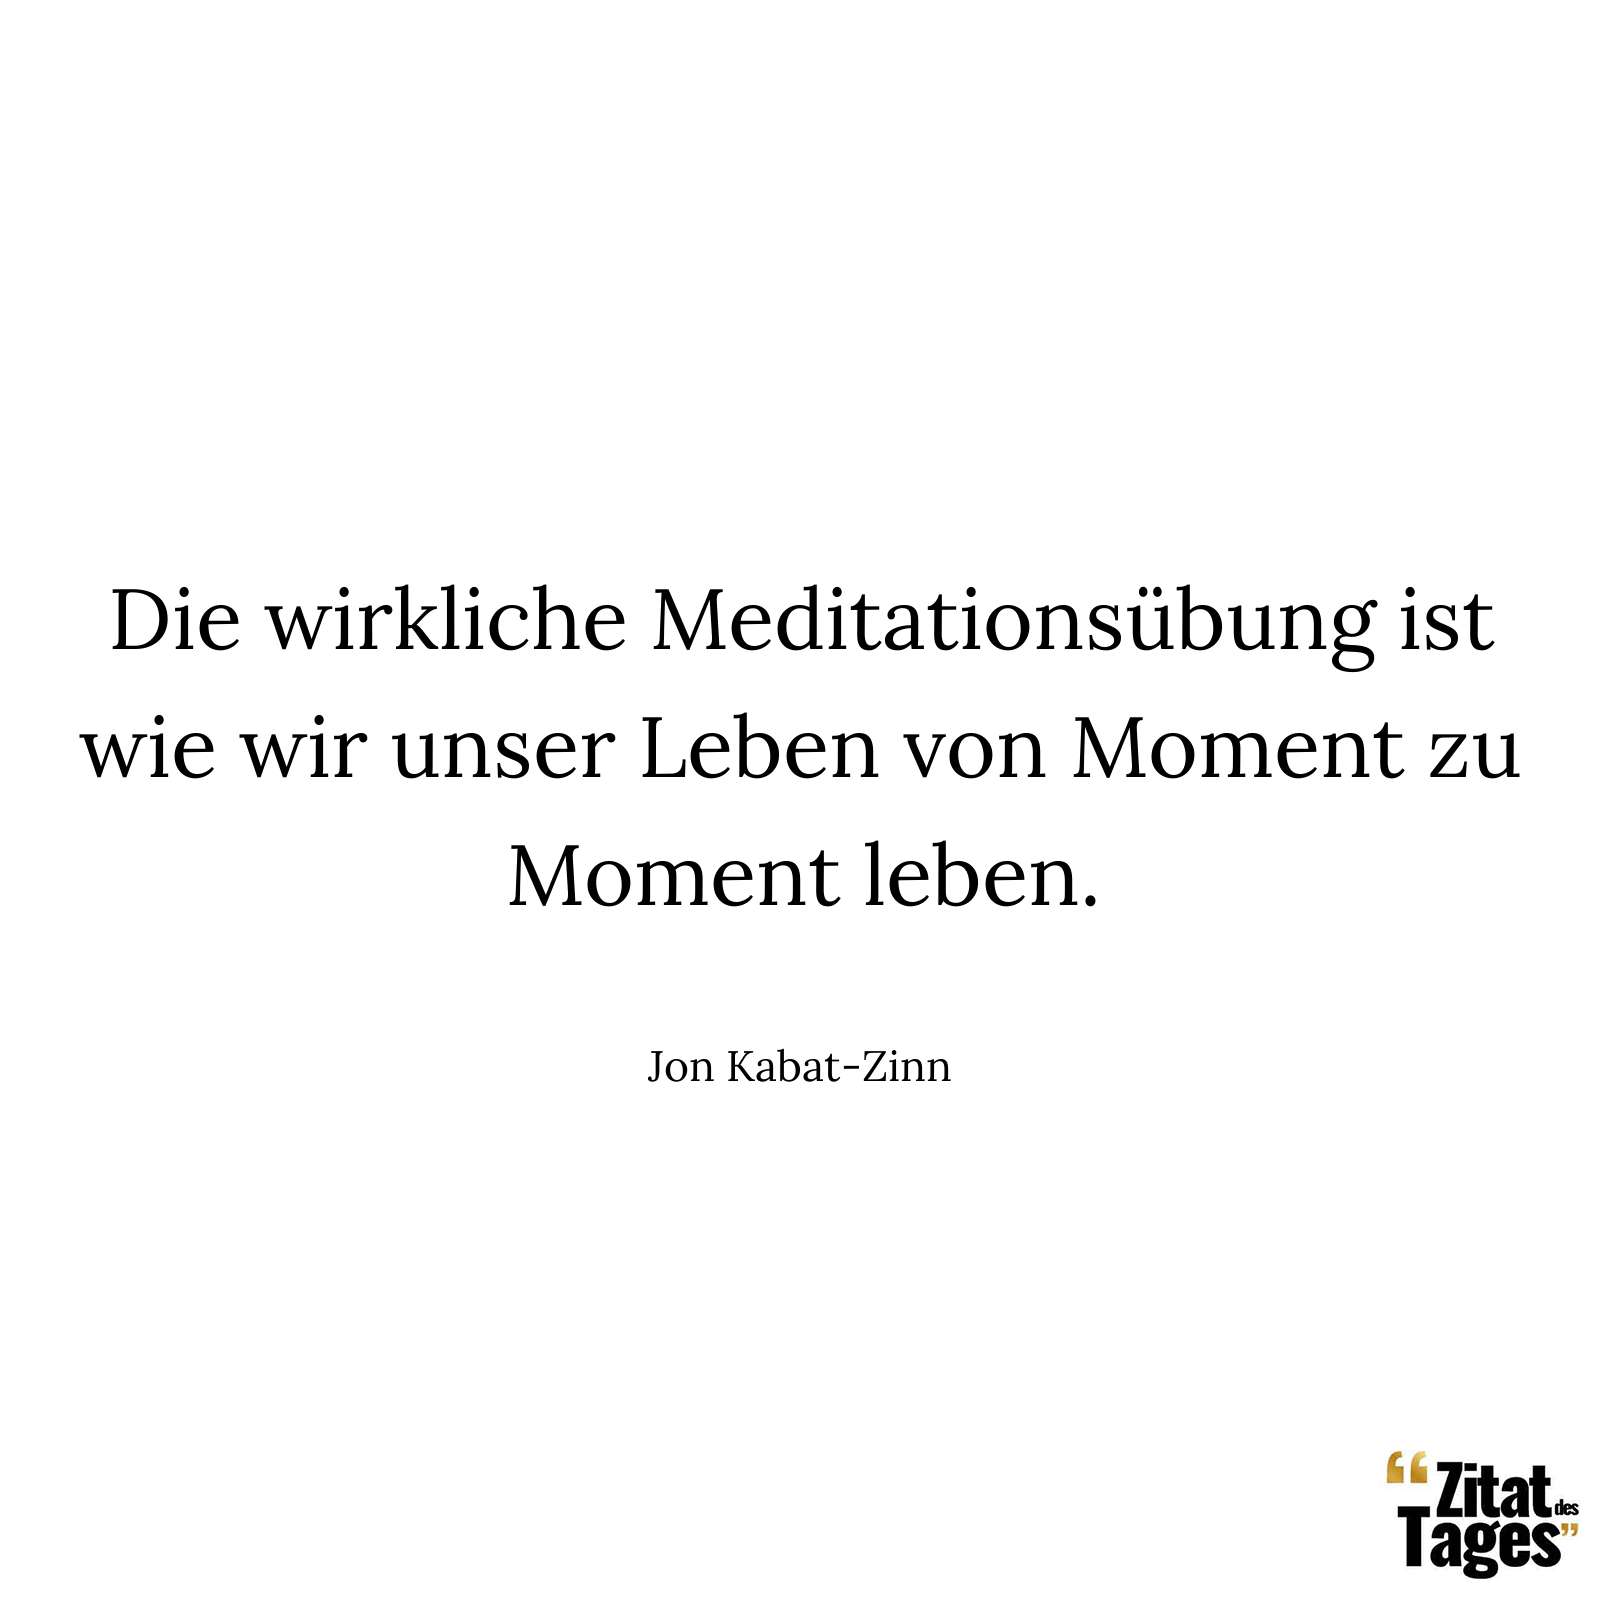 Die wirkliche Meditationsübung ist wie wir unser Leben von Moment zu Moment leben. - Jon Kabat-Zinn